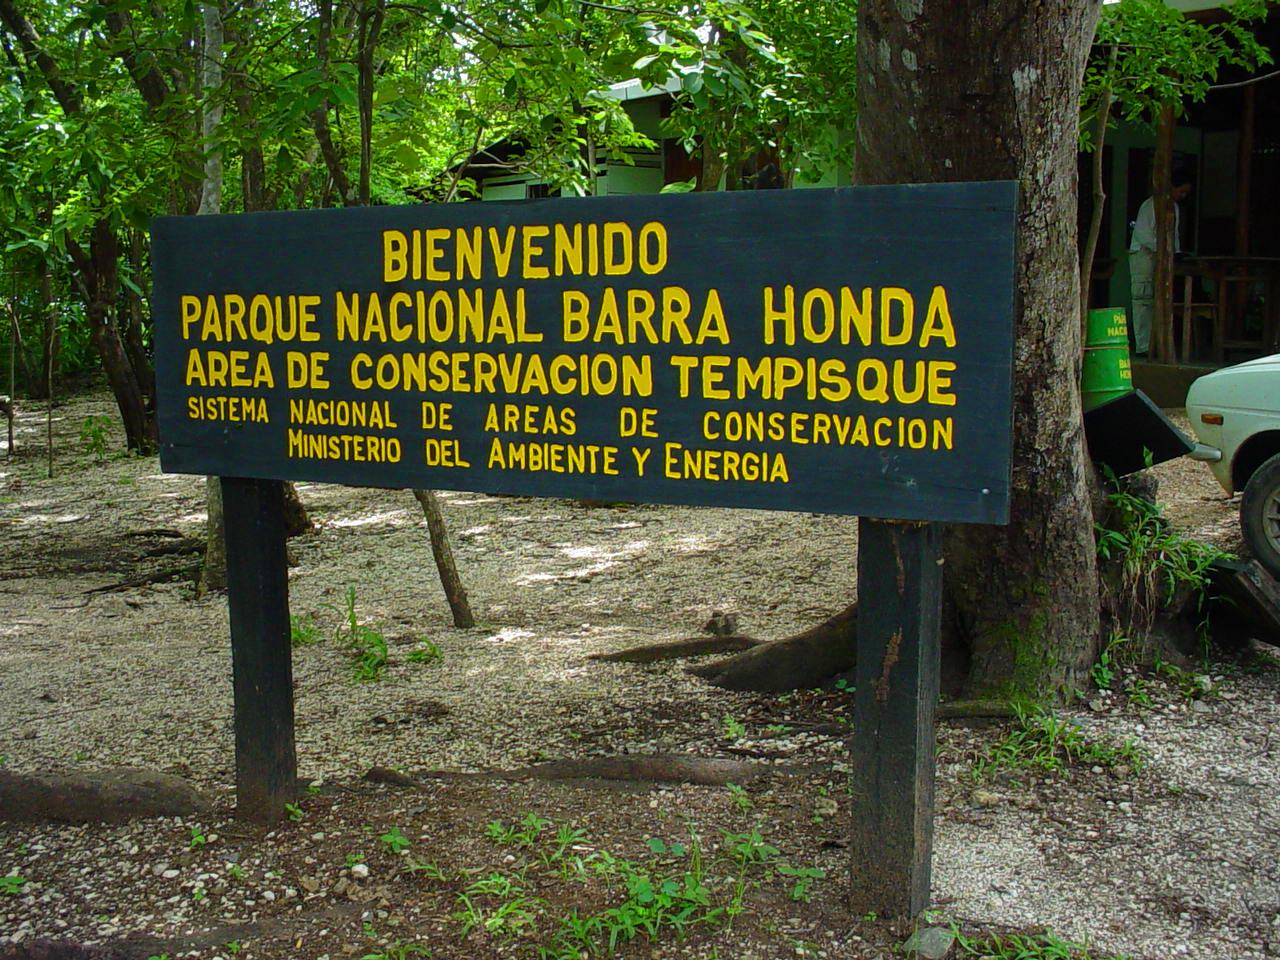 Parque nacional barra honda guanacaste costa rica